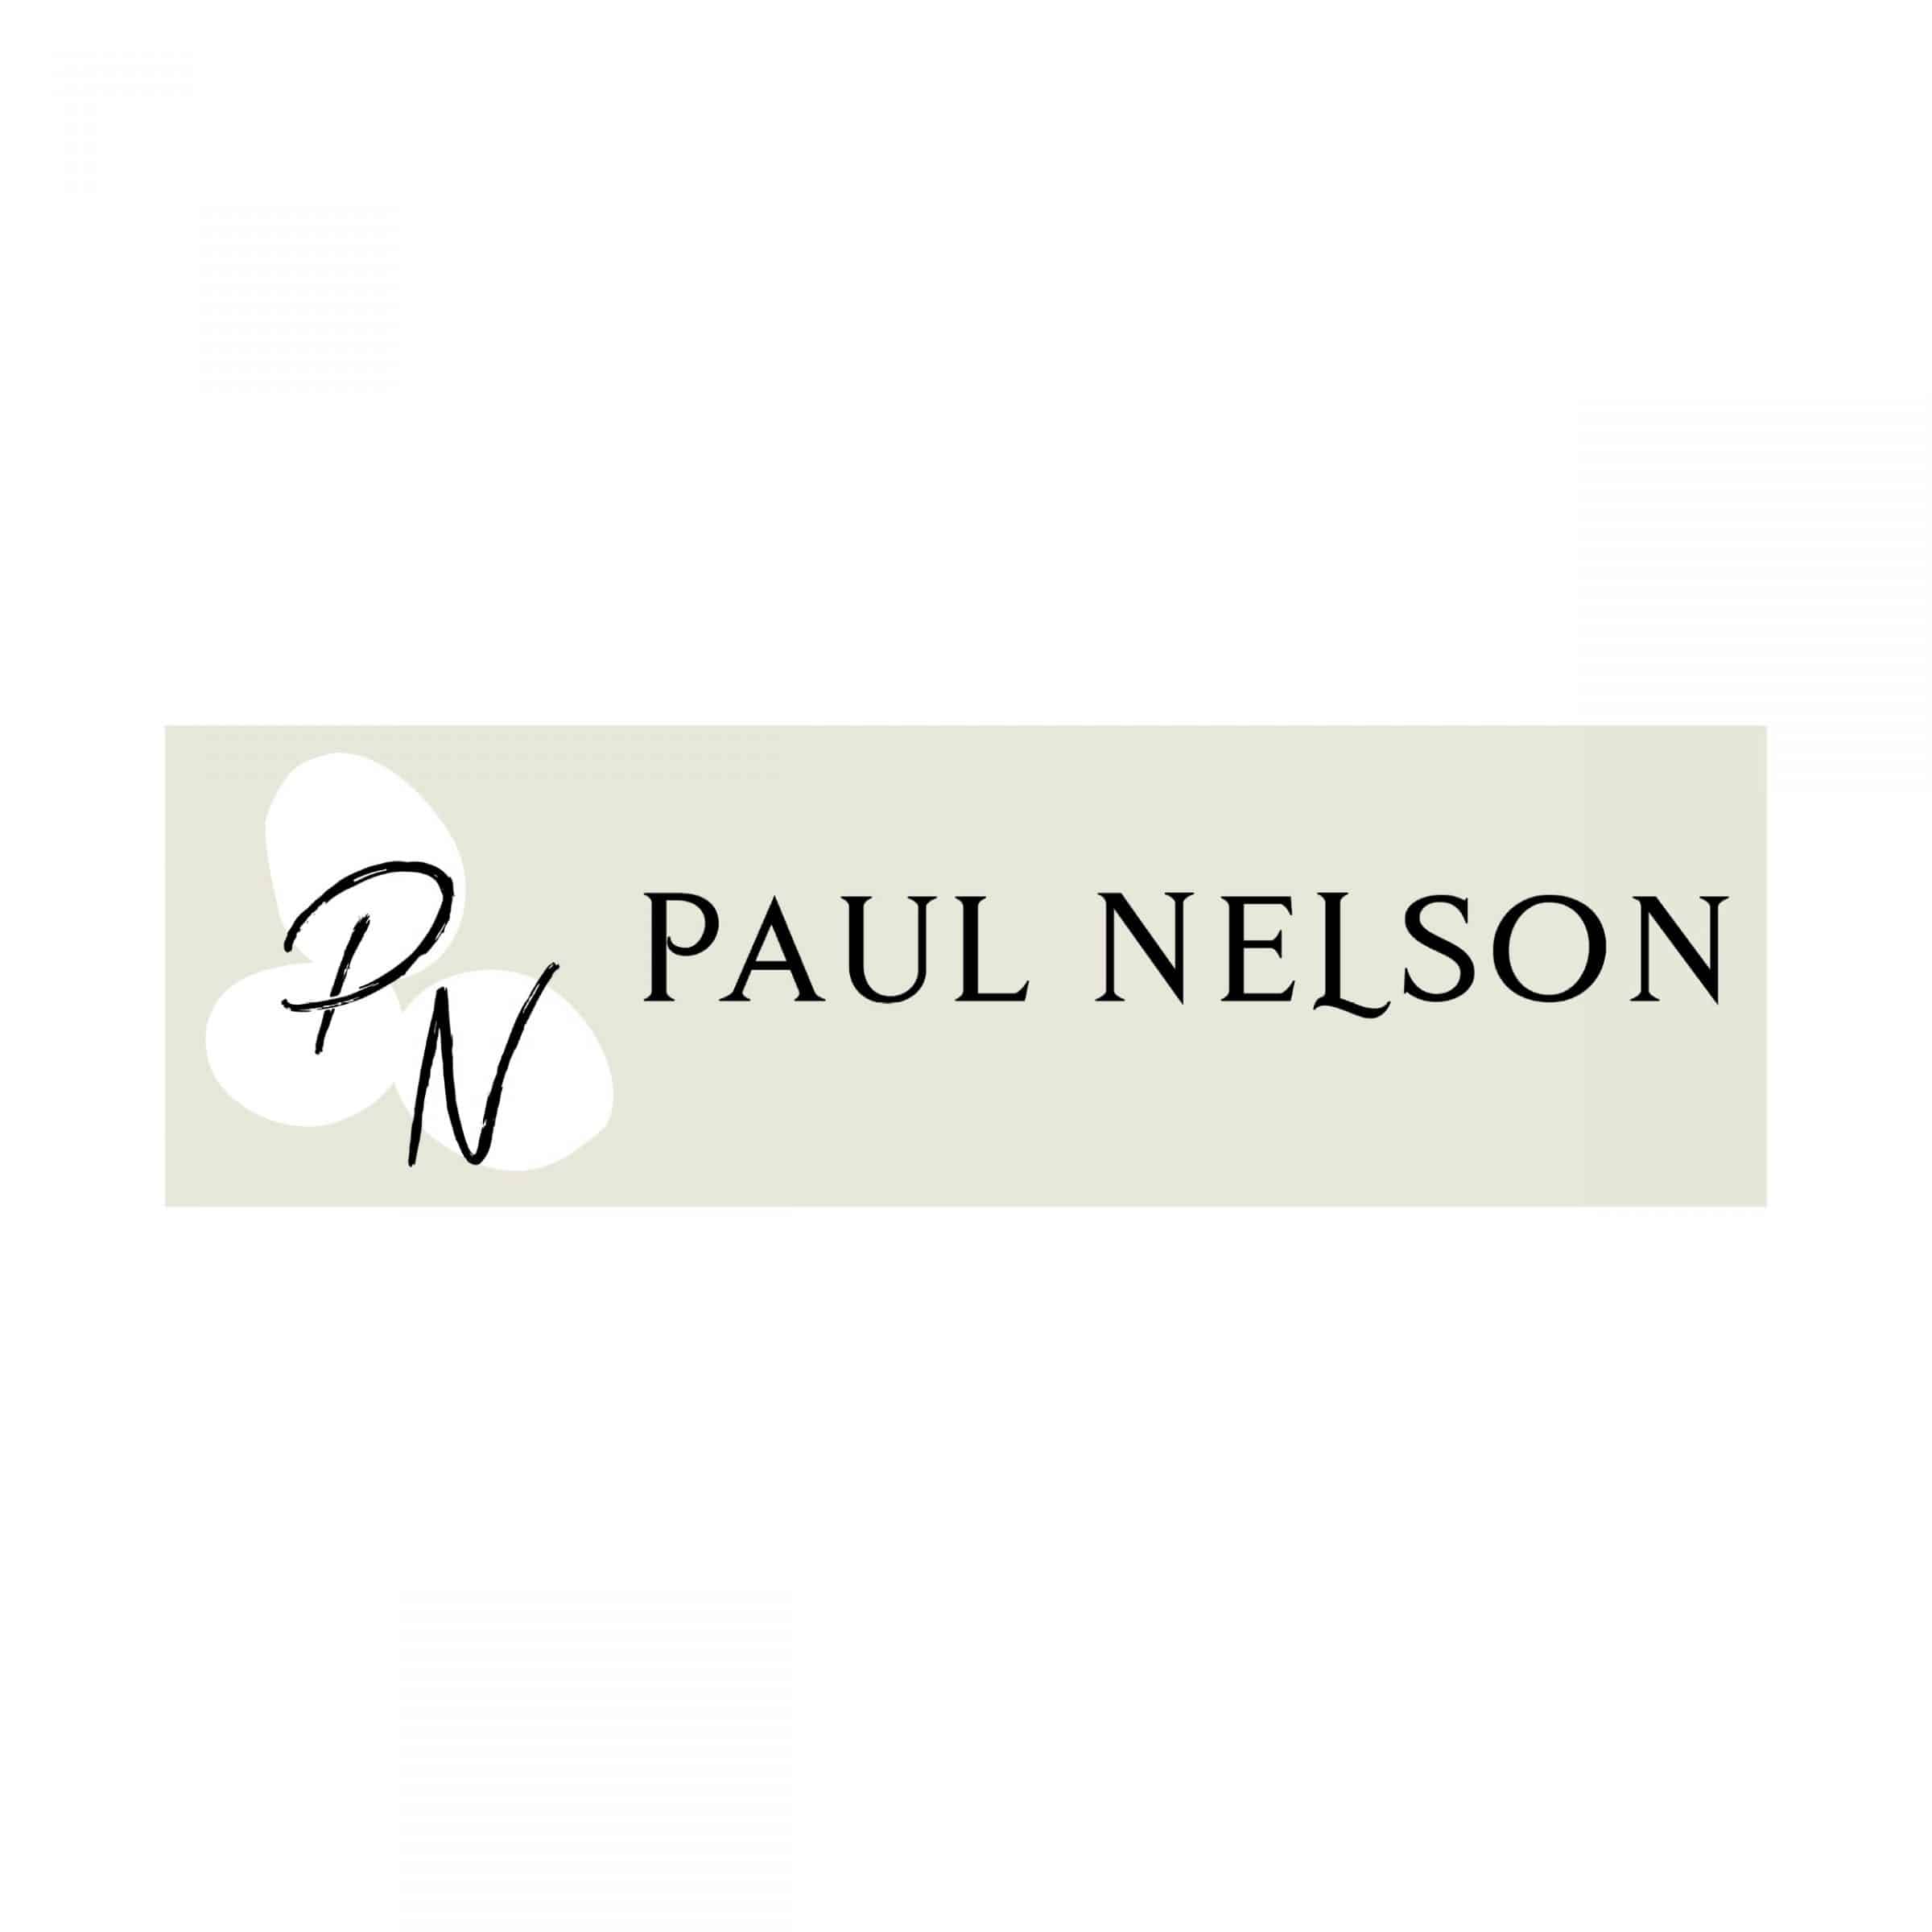 paul nelson wines logo